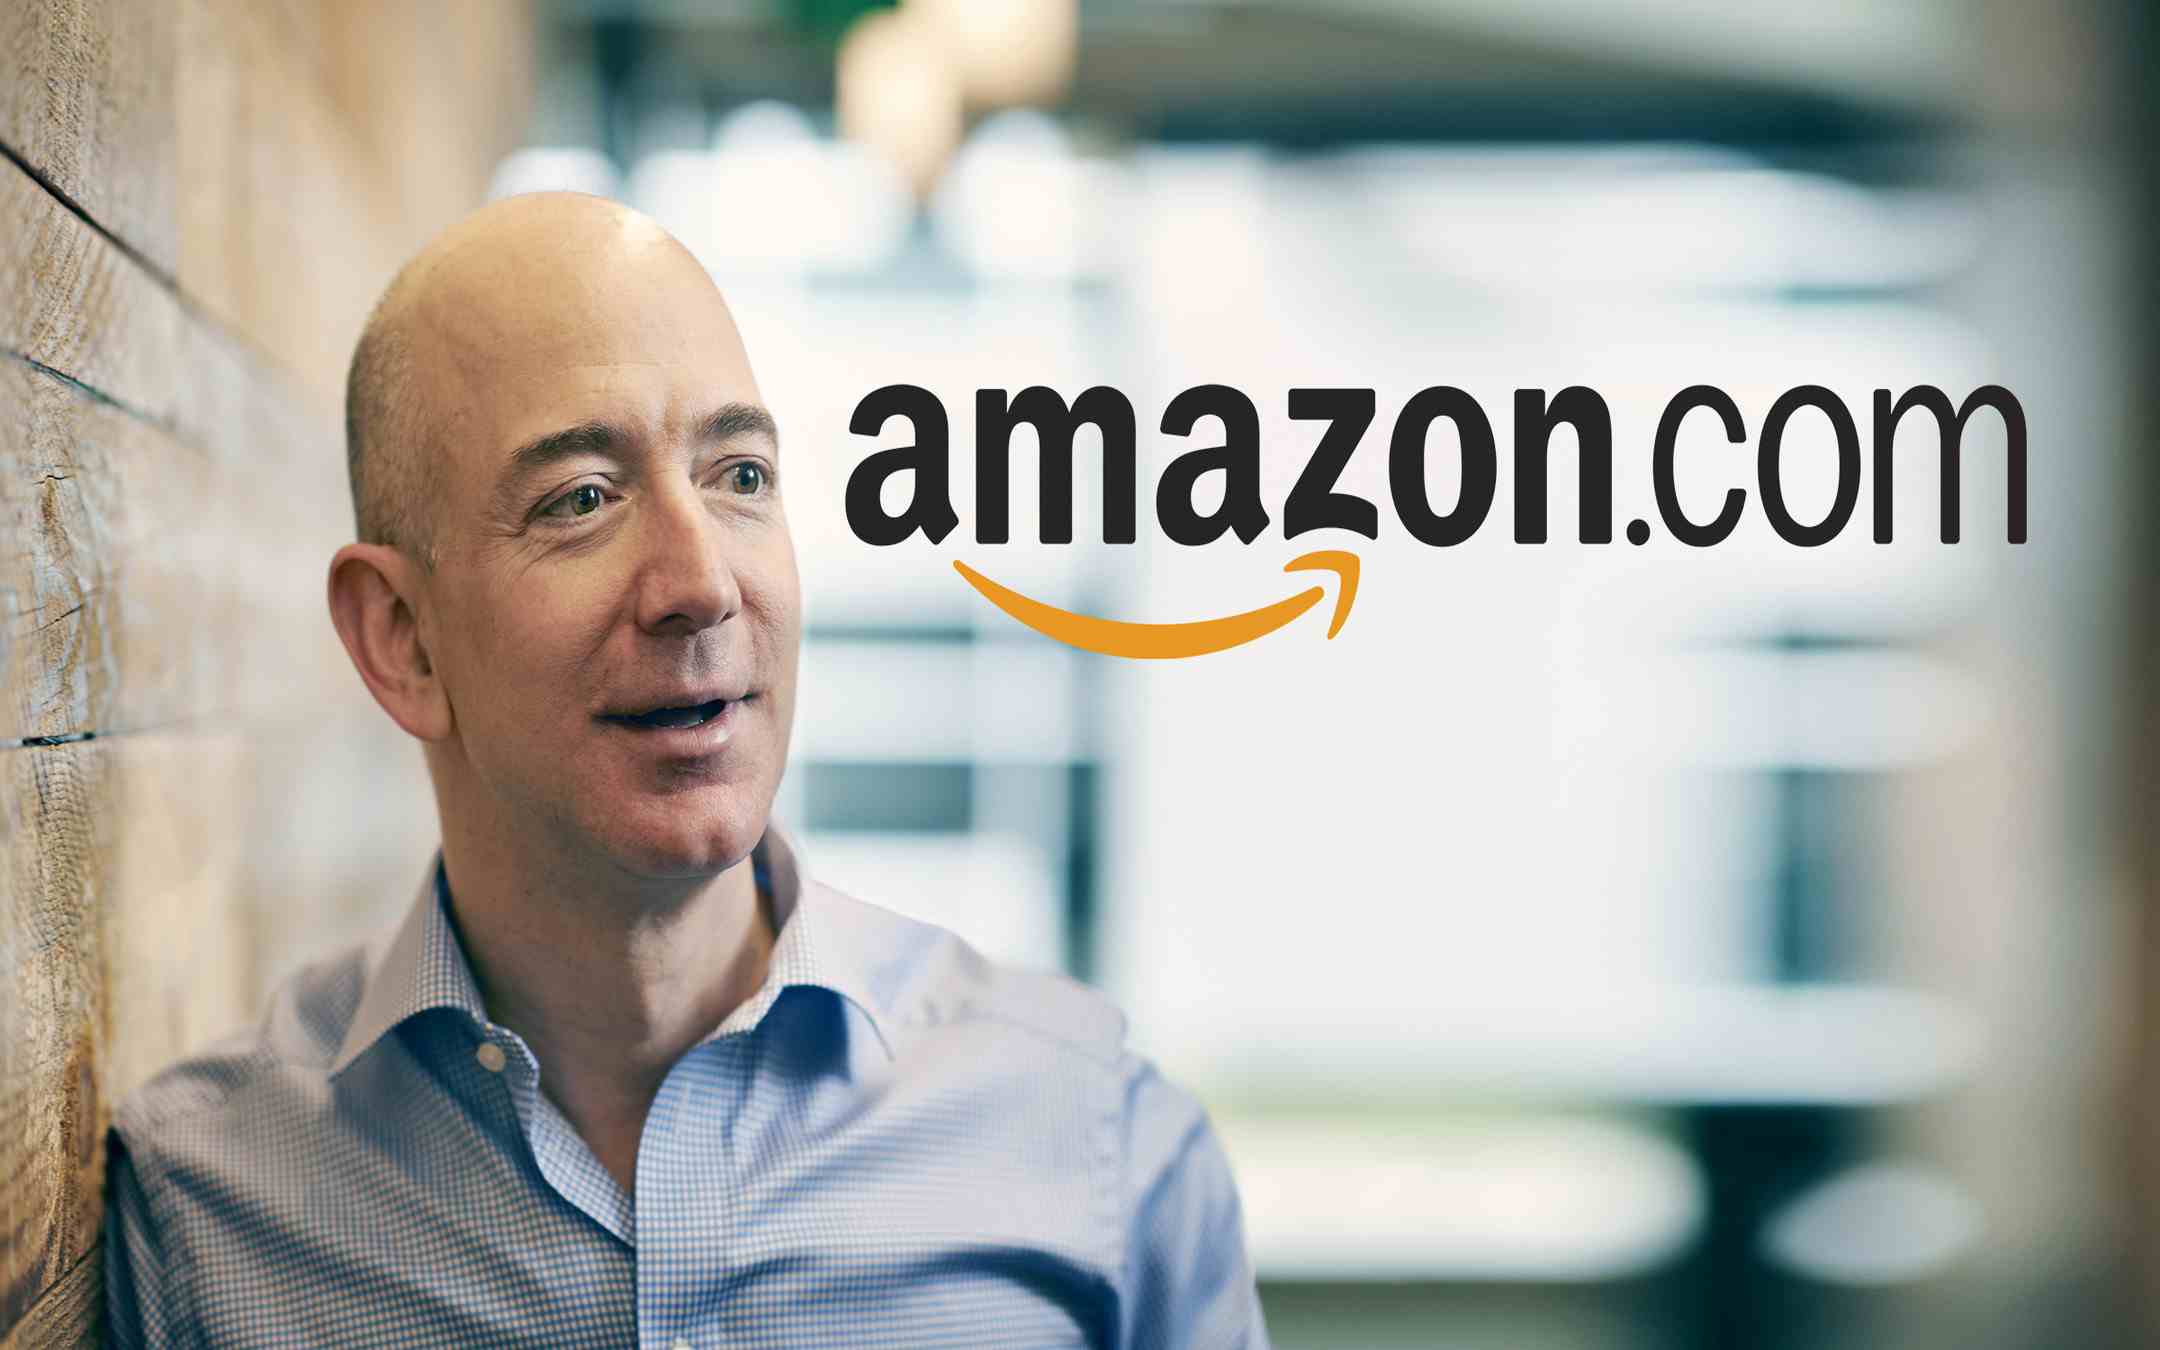 Jeff Bezos and his company, Amazon.